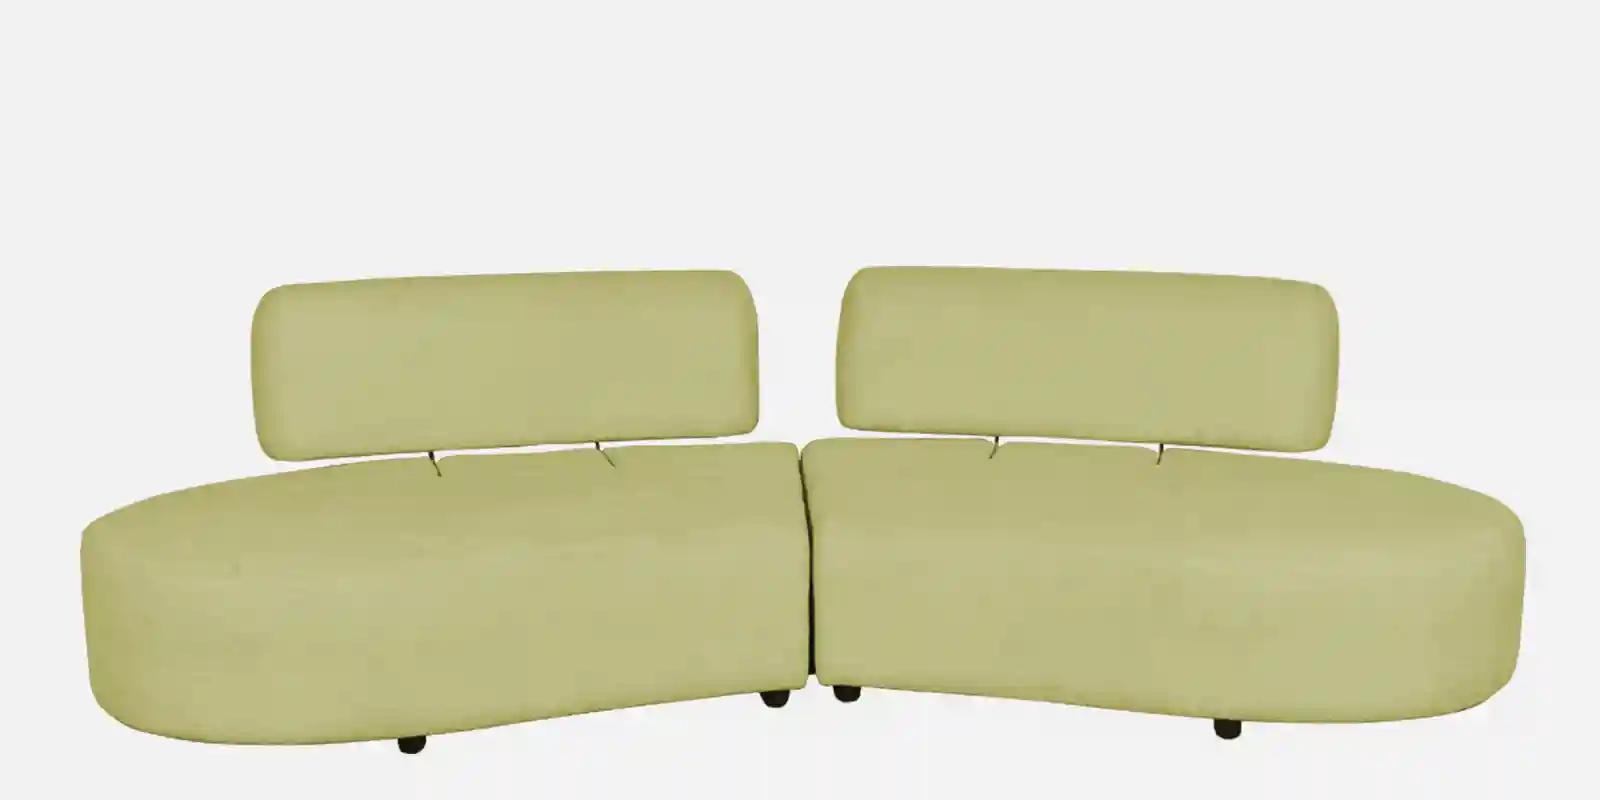 Vixen Sofa Off White -3 Seater